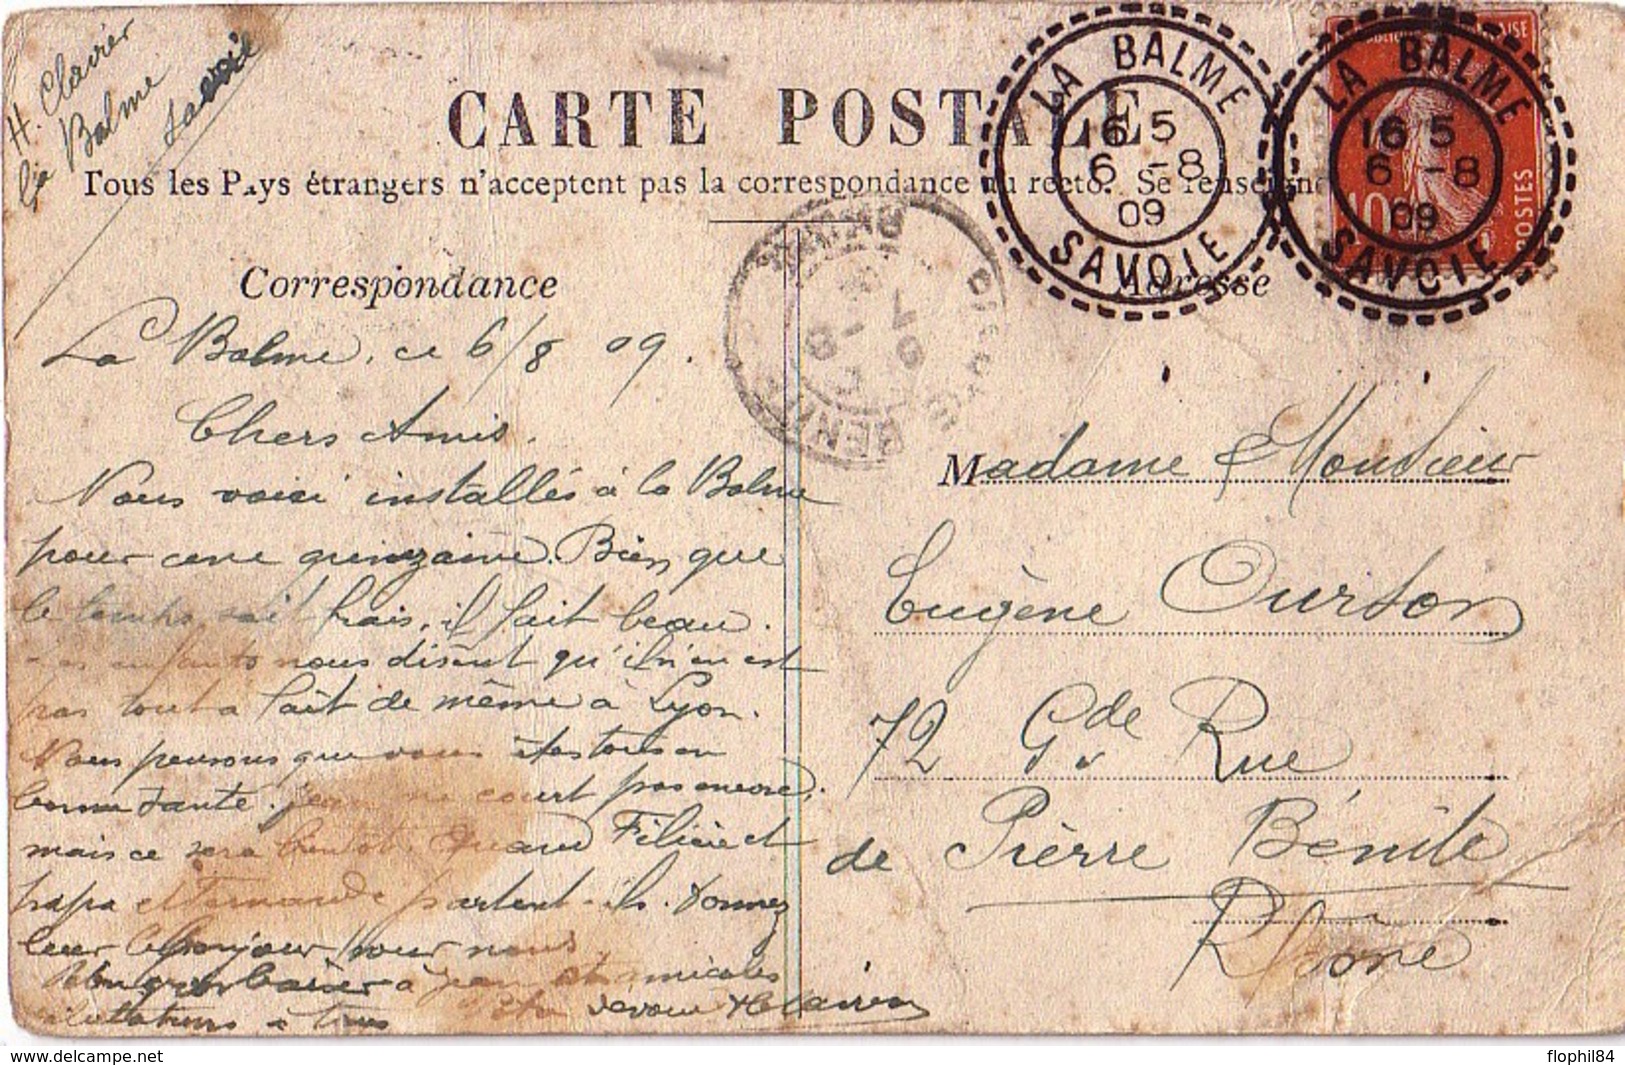 SAVOIE - LA BALME - CACHET T84 - SEMEUSE DU 6-8-1909 - CARTE DE ST JEAN DE COUZ. - Manual Postmarks